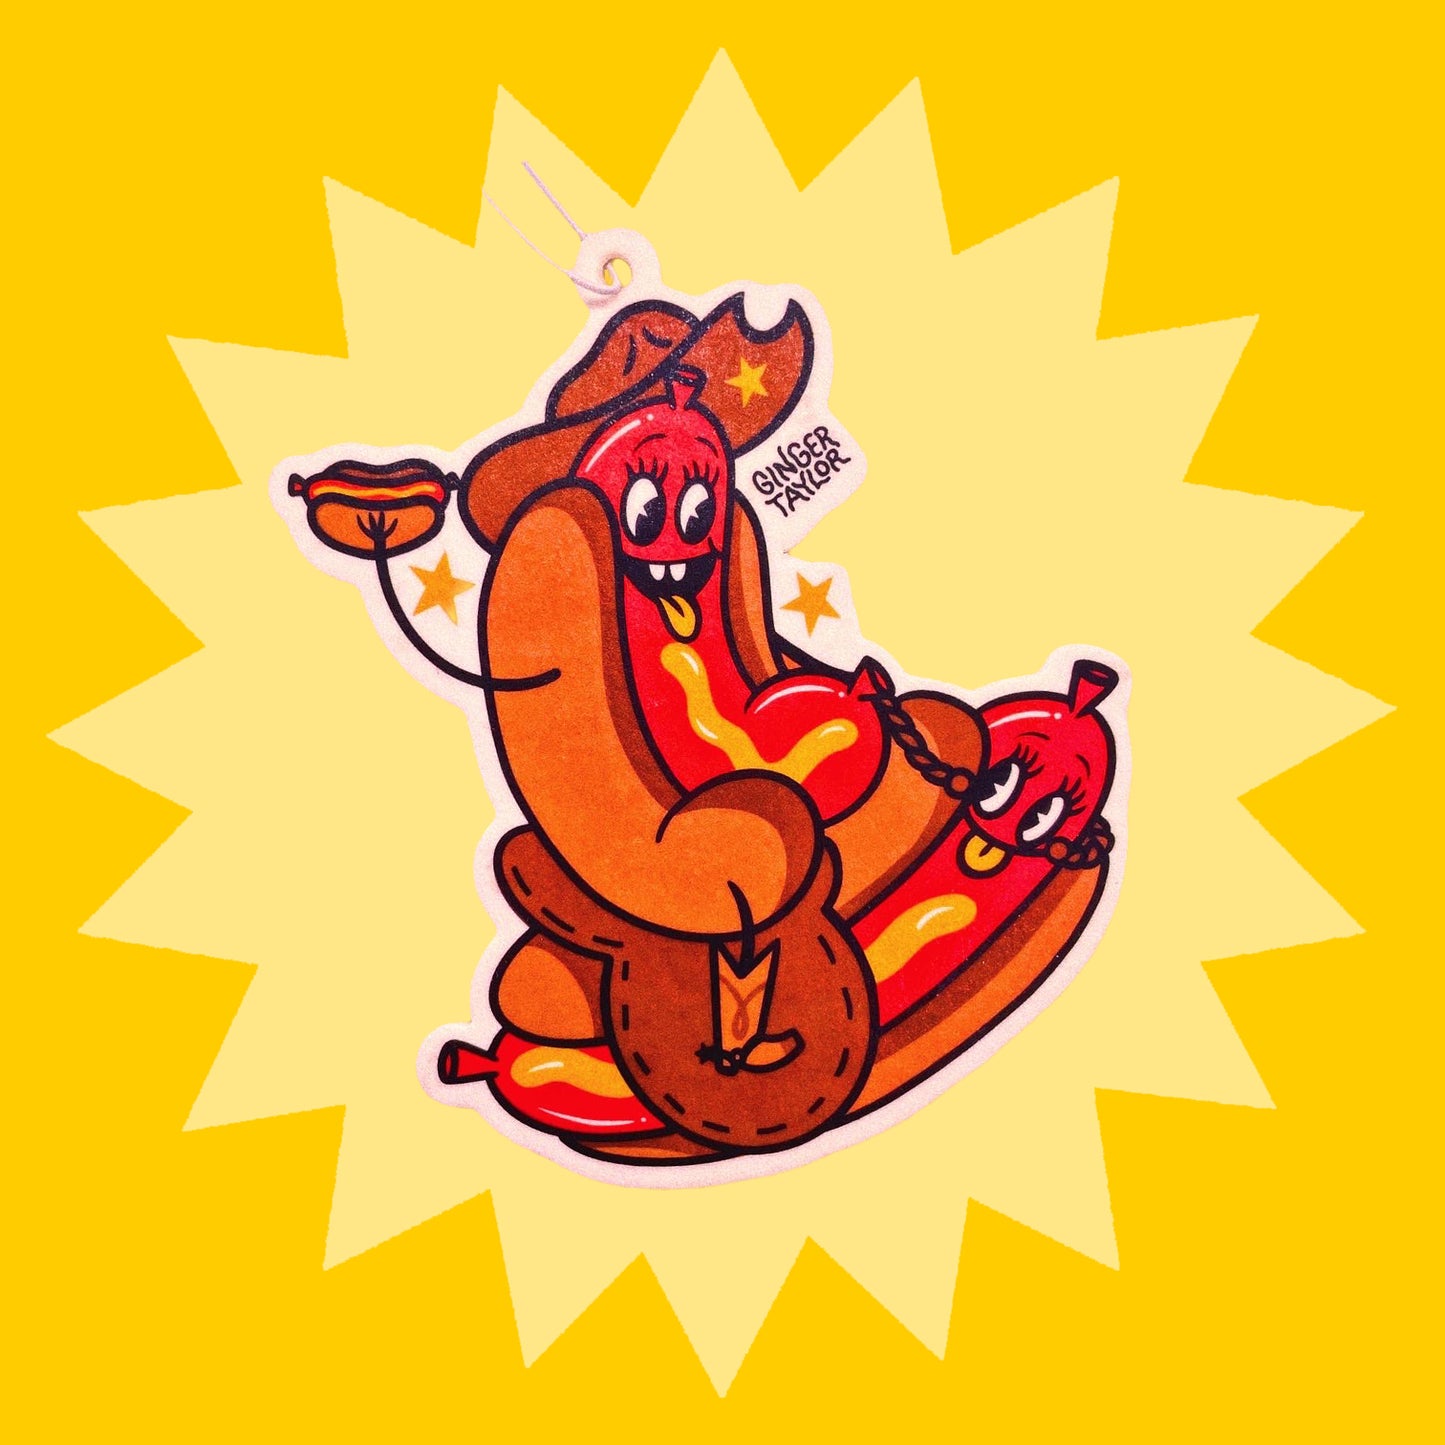 Hotdog Rides - Air Freshener (Strawberries and Cream)